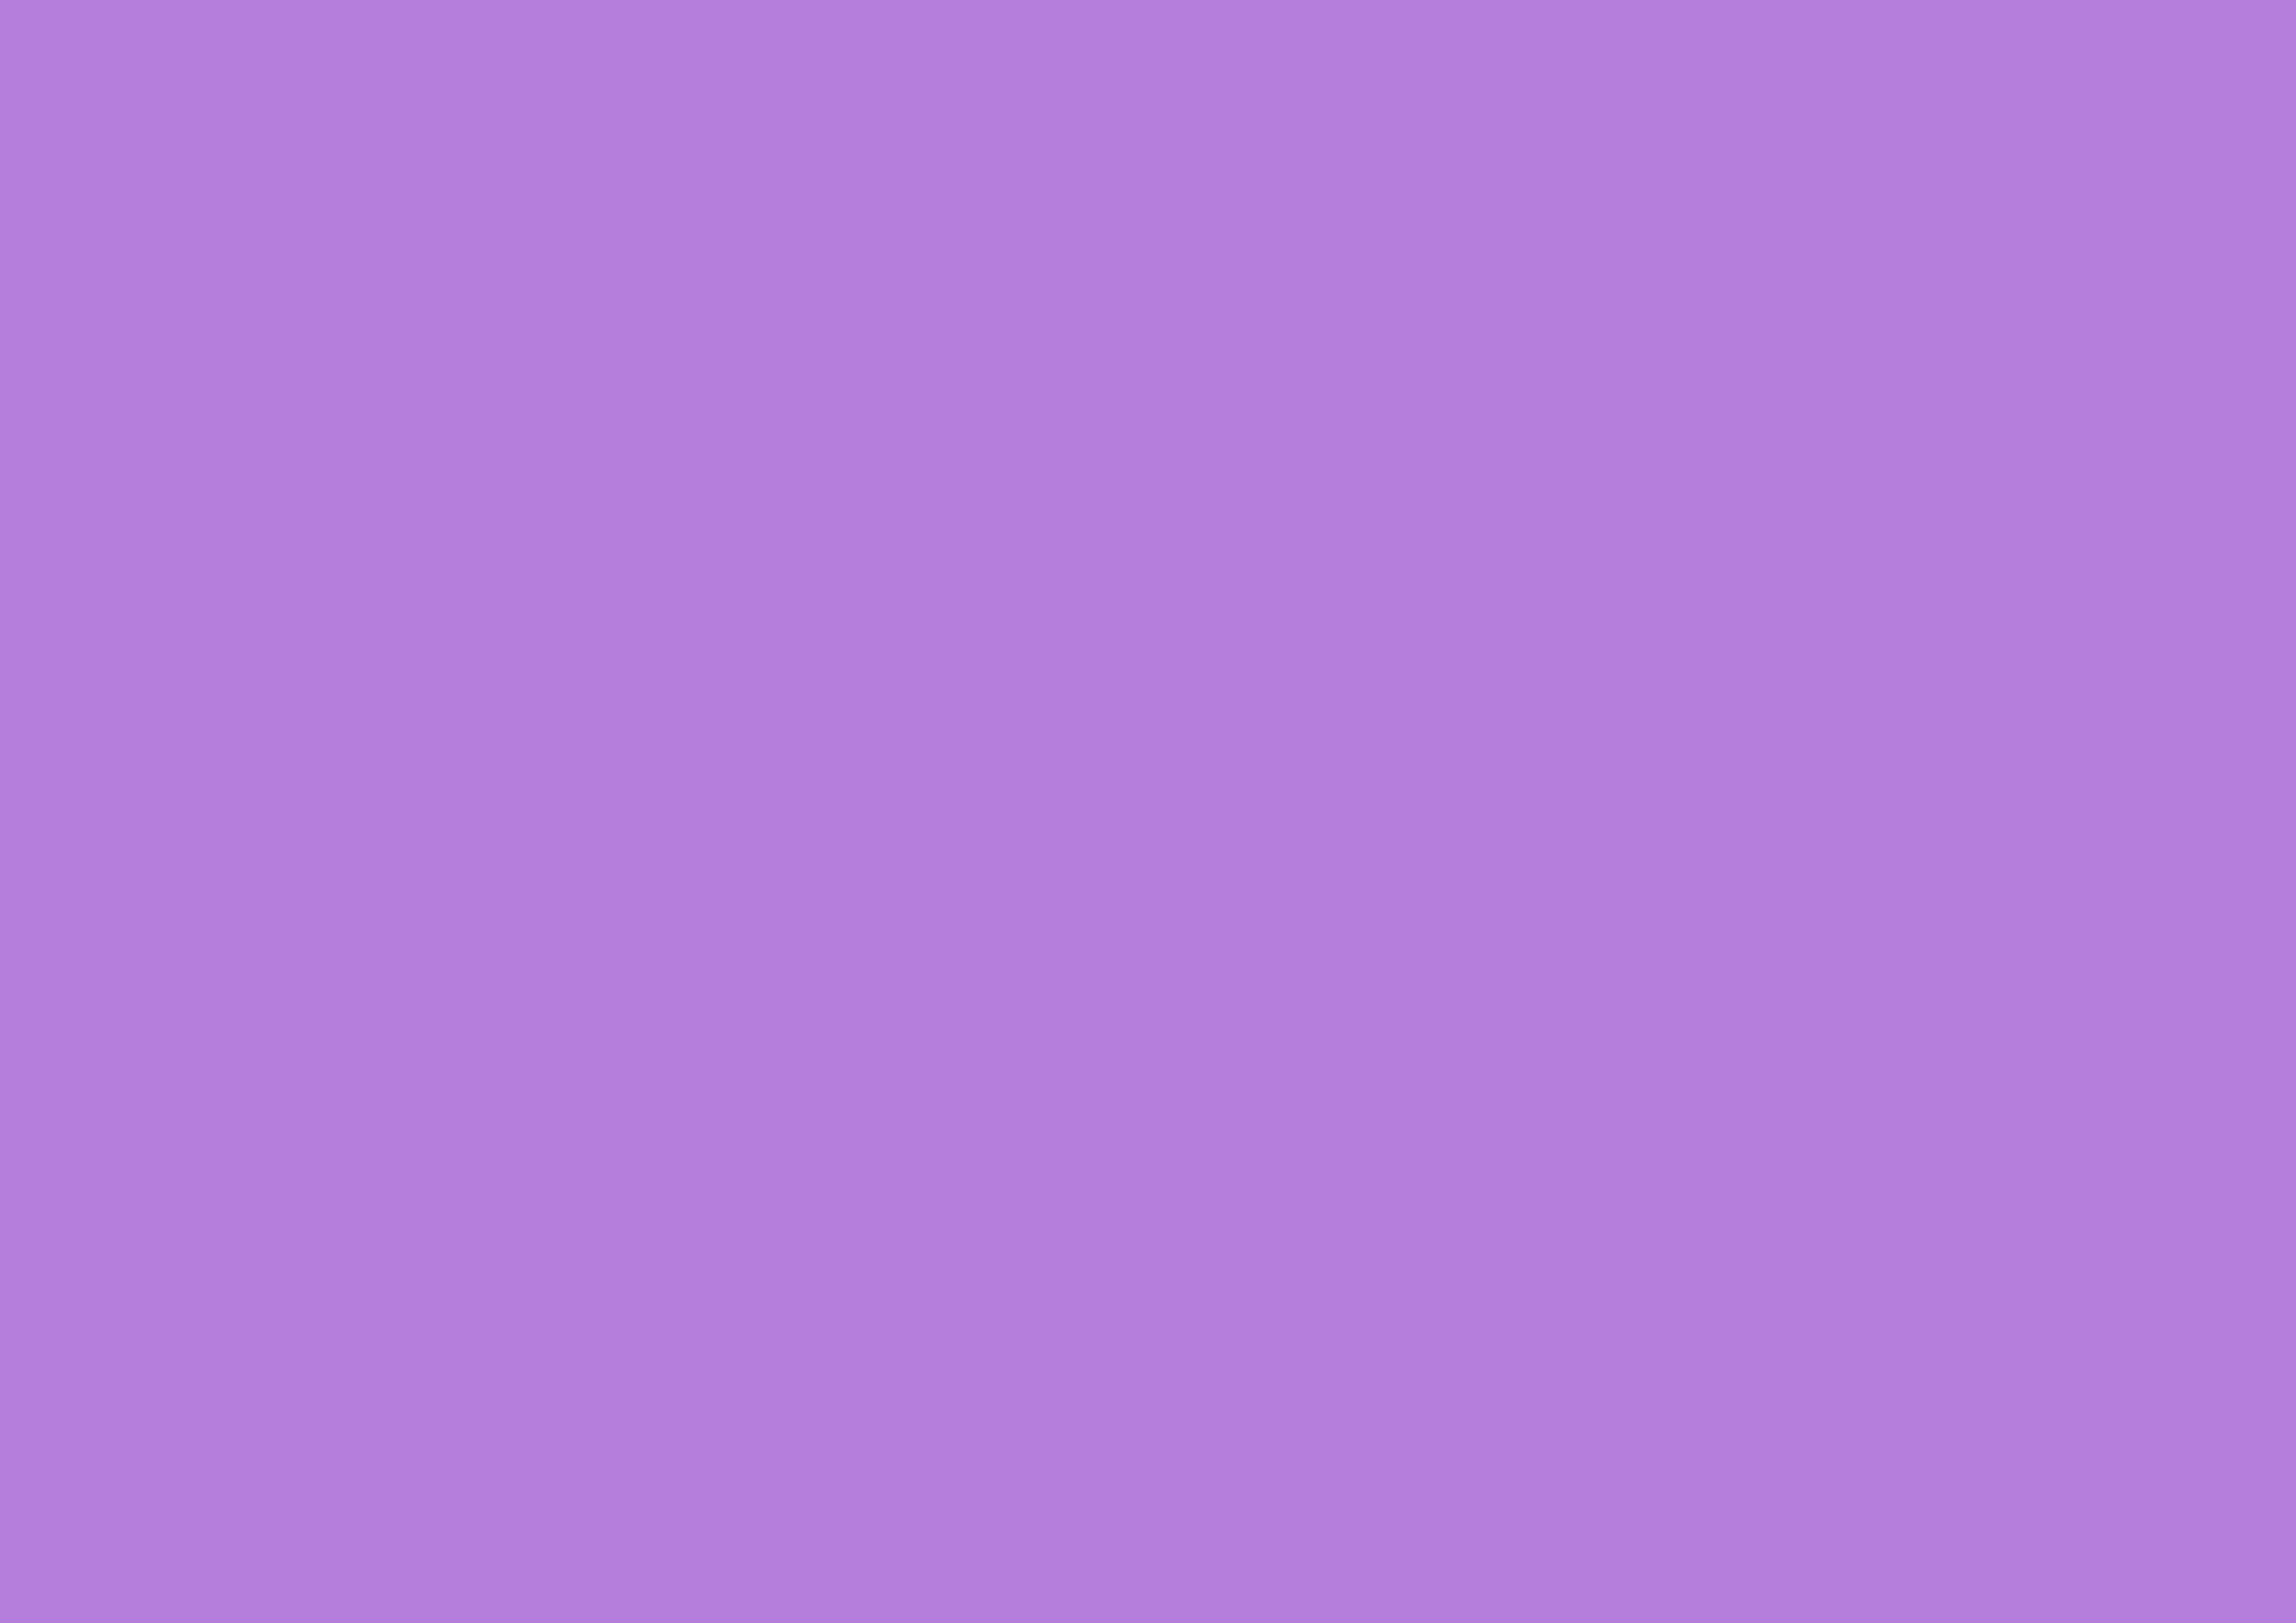 3508x2480 Lavender Floral Solid Color Background